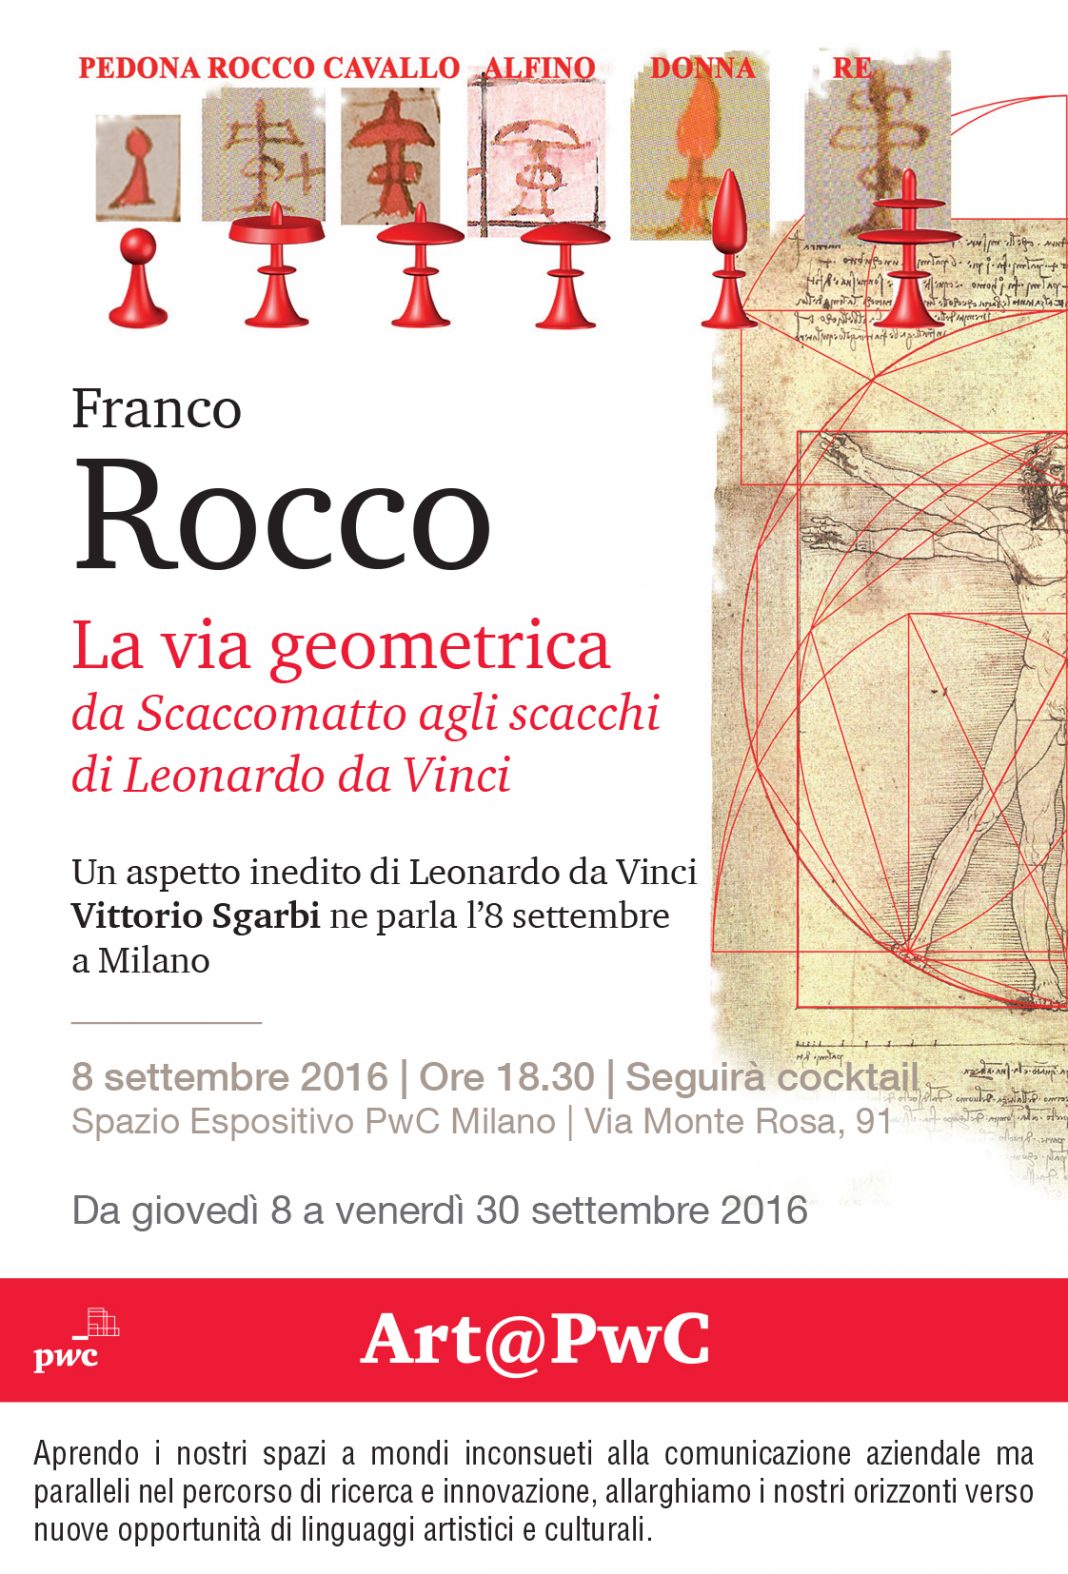 La via geometrica. Da scaccomatto agli scacchi di Leonardo da Vinci.https://www.exibart.com/repository/media/eventi/2016/08/la-via-geometrica.-da-scaccomatto-agli-scacchi-di-leonardo-da-vinci-1068x1574.jpg